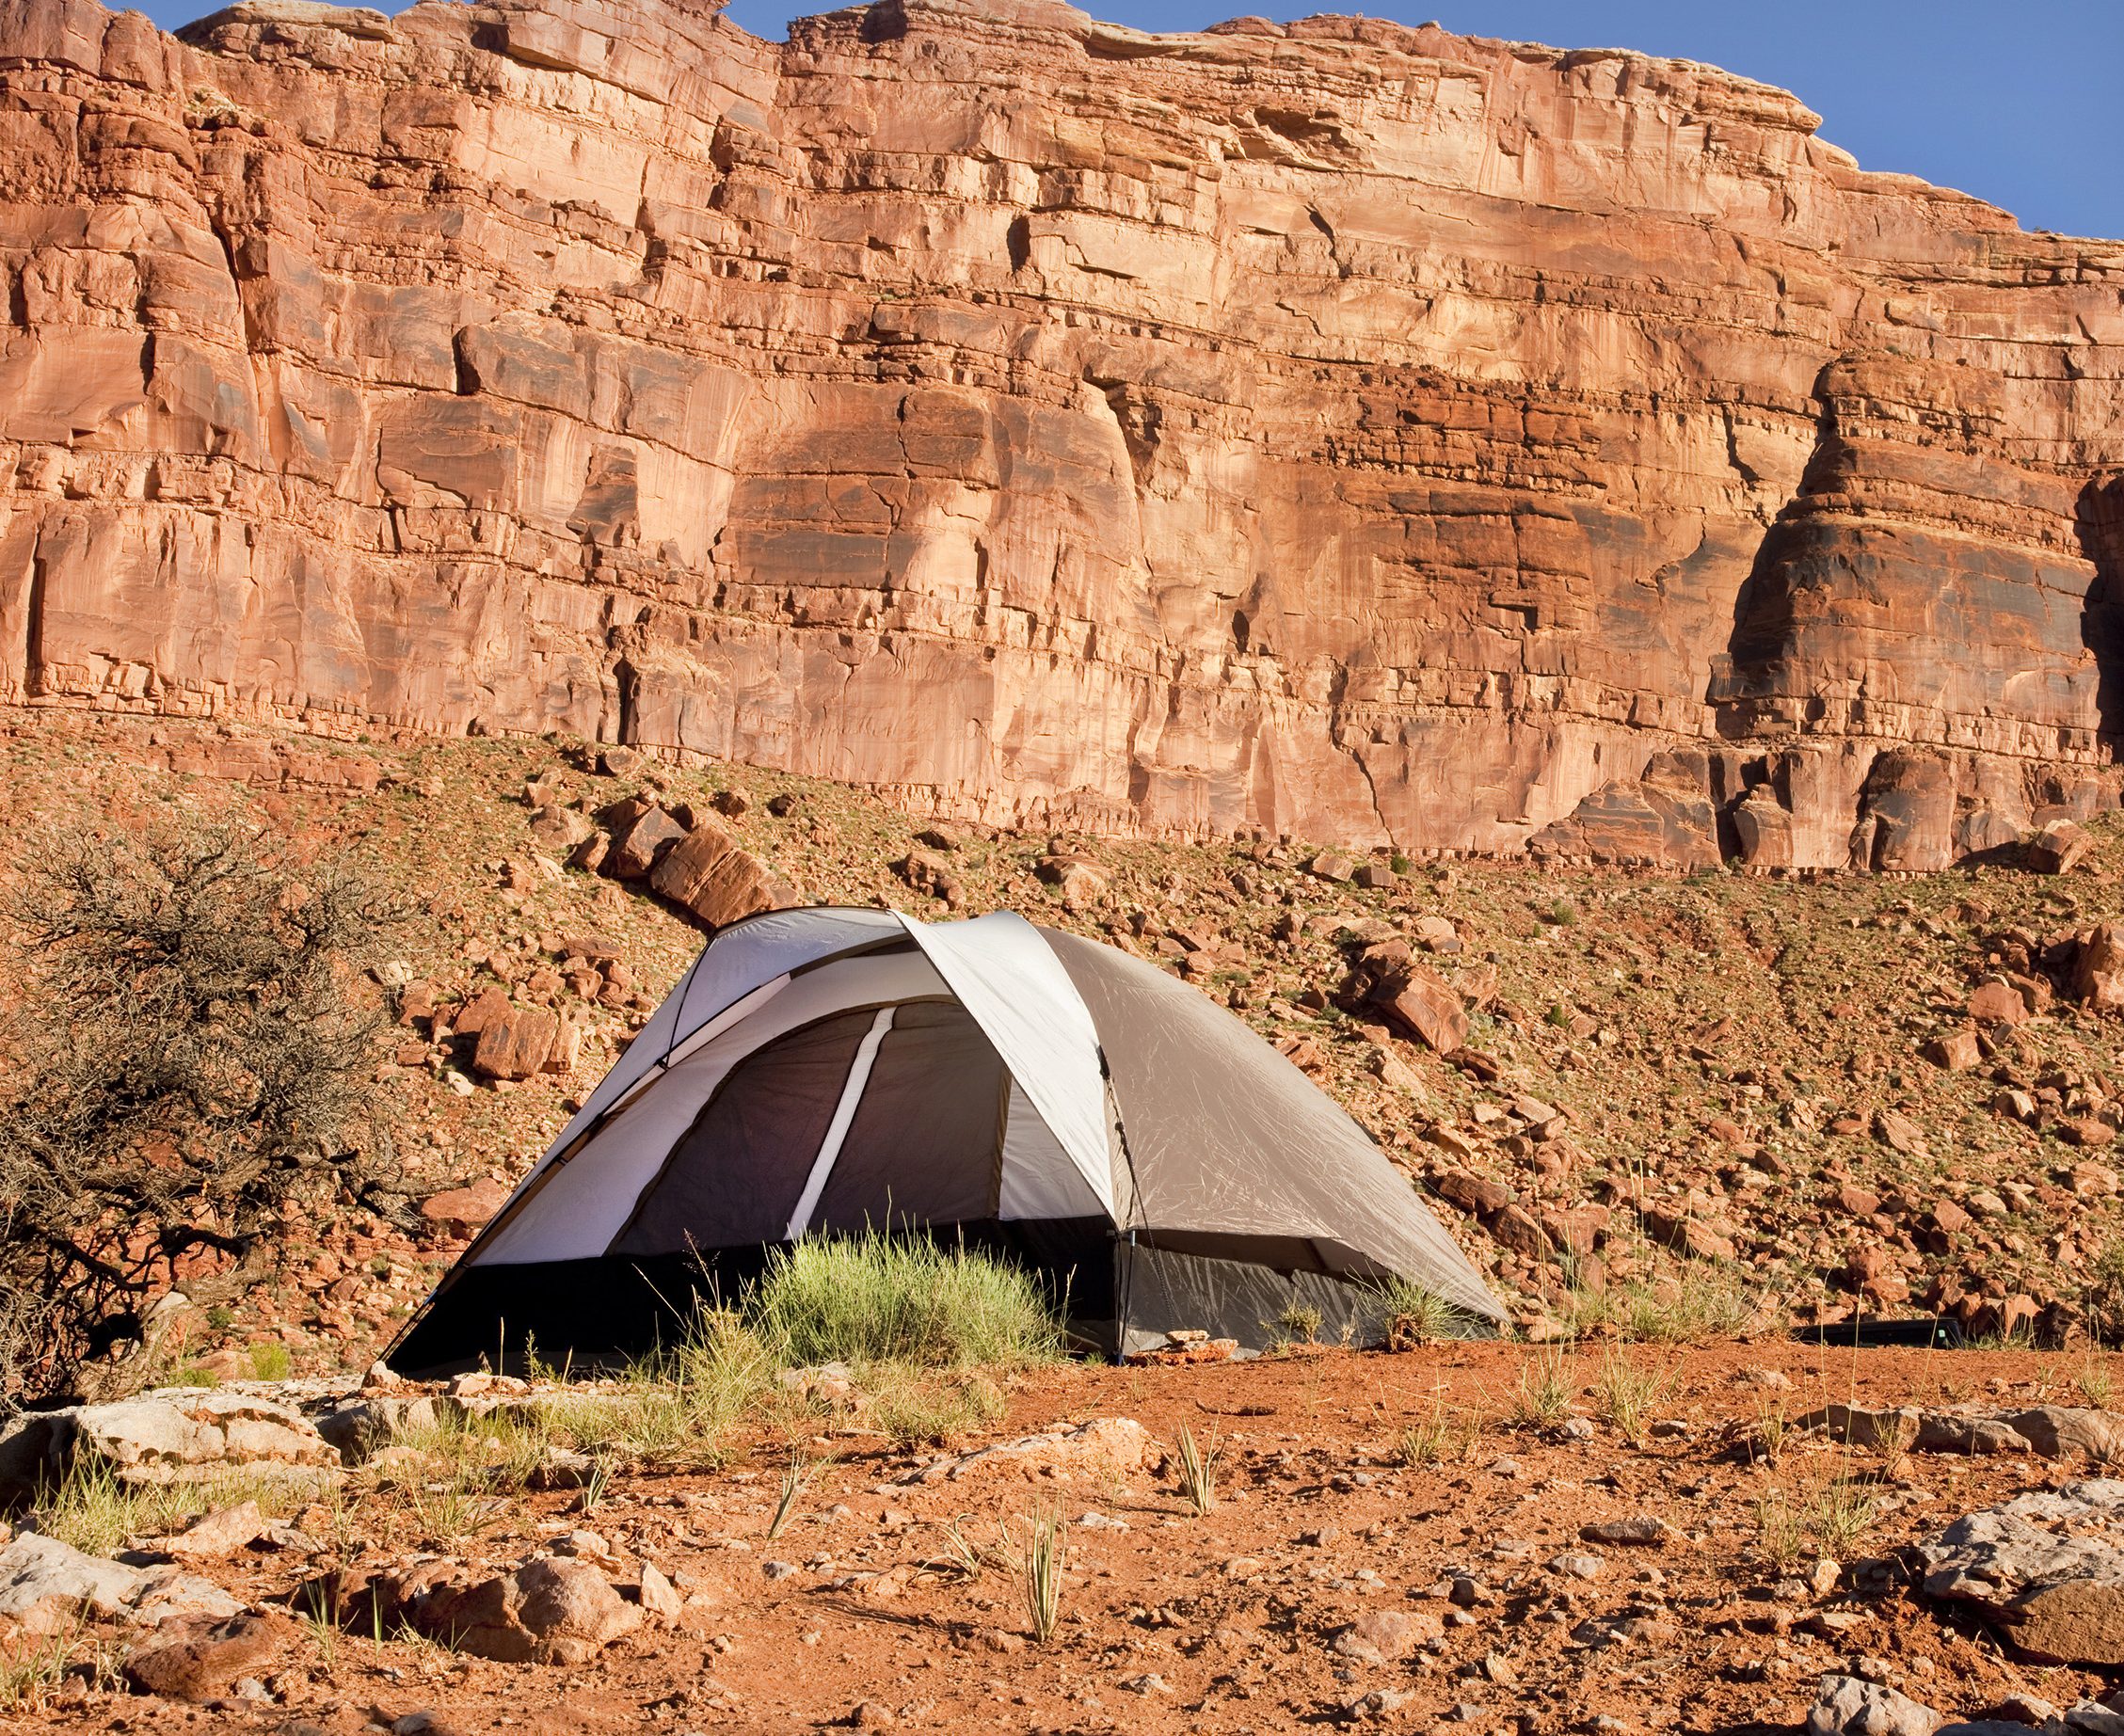 Camp site in the Utah Desert